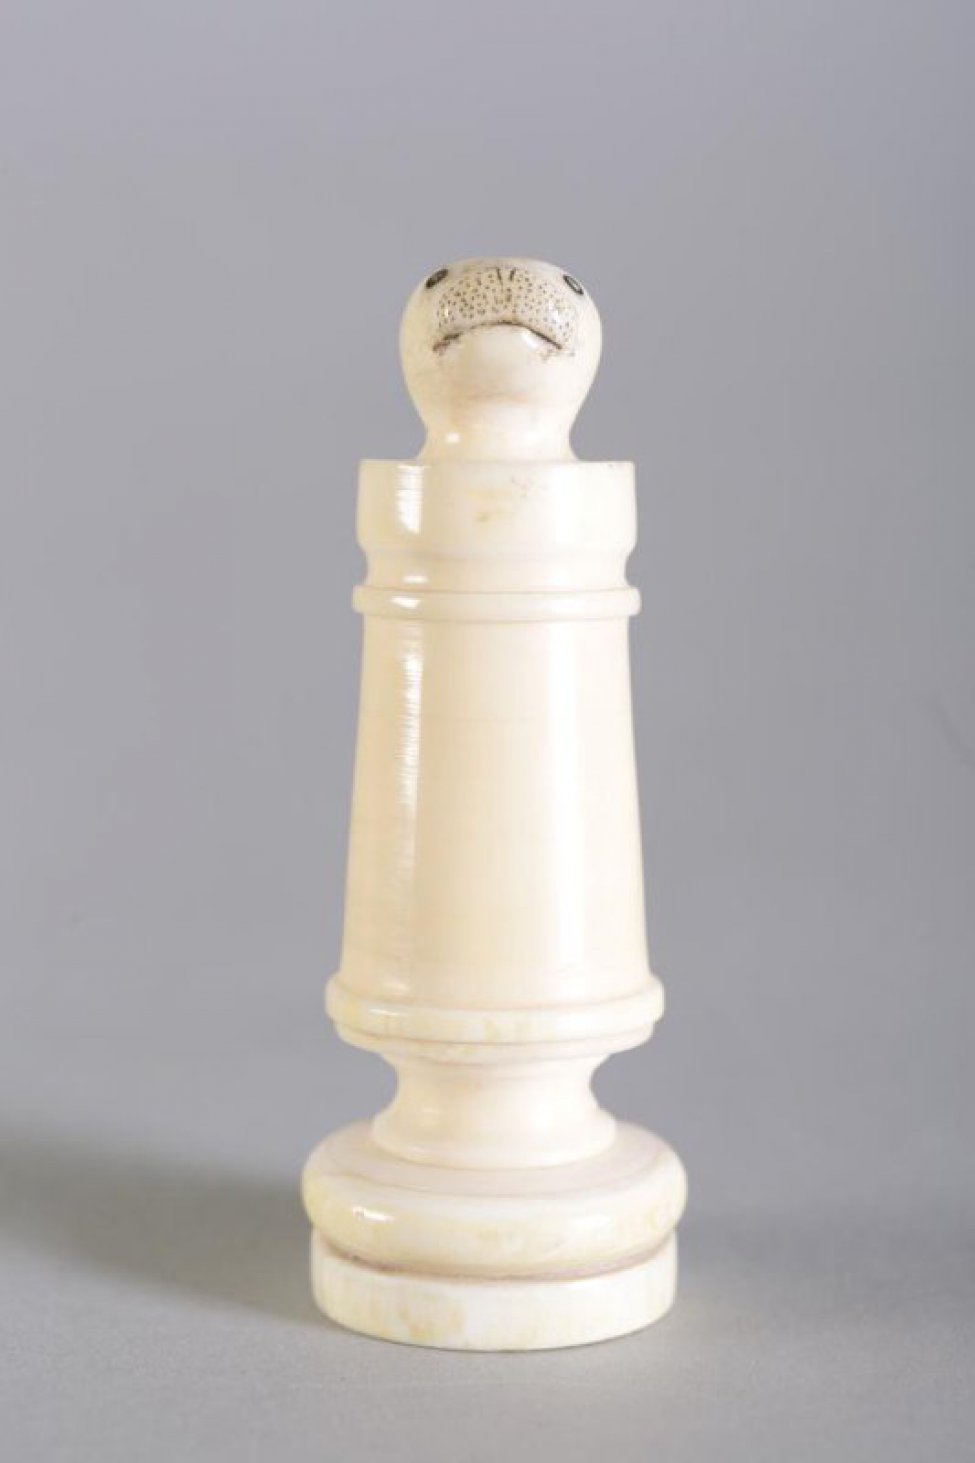 Шахматная фигура белого цвета в виде цилиндрической профилированной балясины, вверху заканчивается головой нерпы. На голове неглубокой резьбой (процарапыванием) с черной тонировкой обозначены  маленькие круглые глаза, линия рта и точки на морде. Вся фигура выполнена из одного куска бивня.